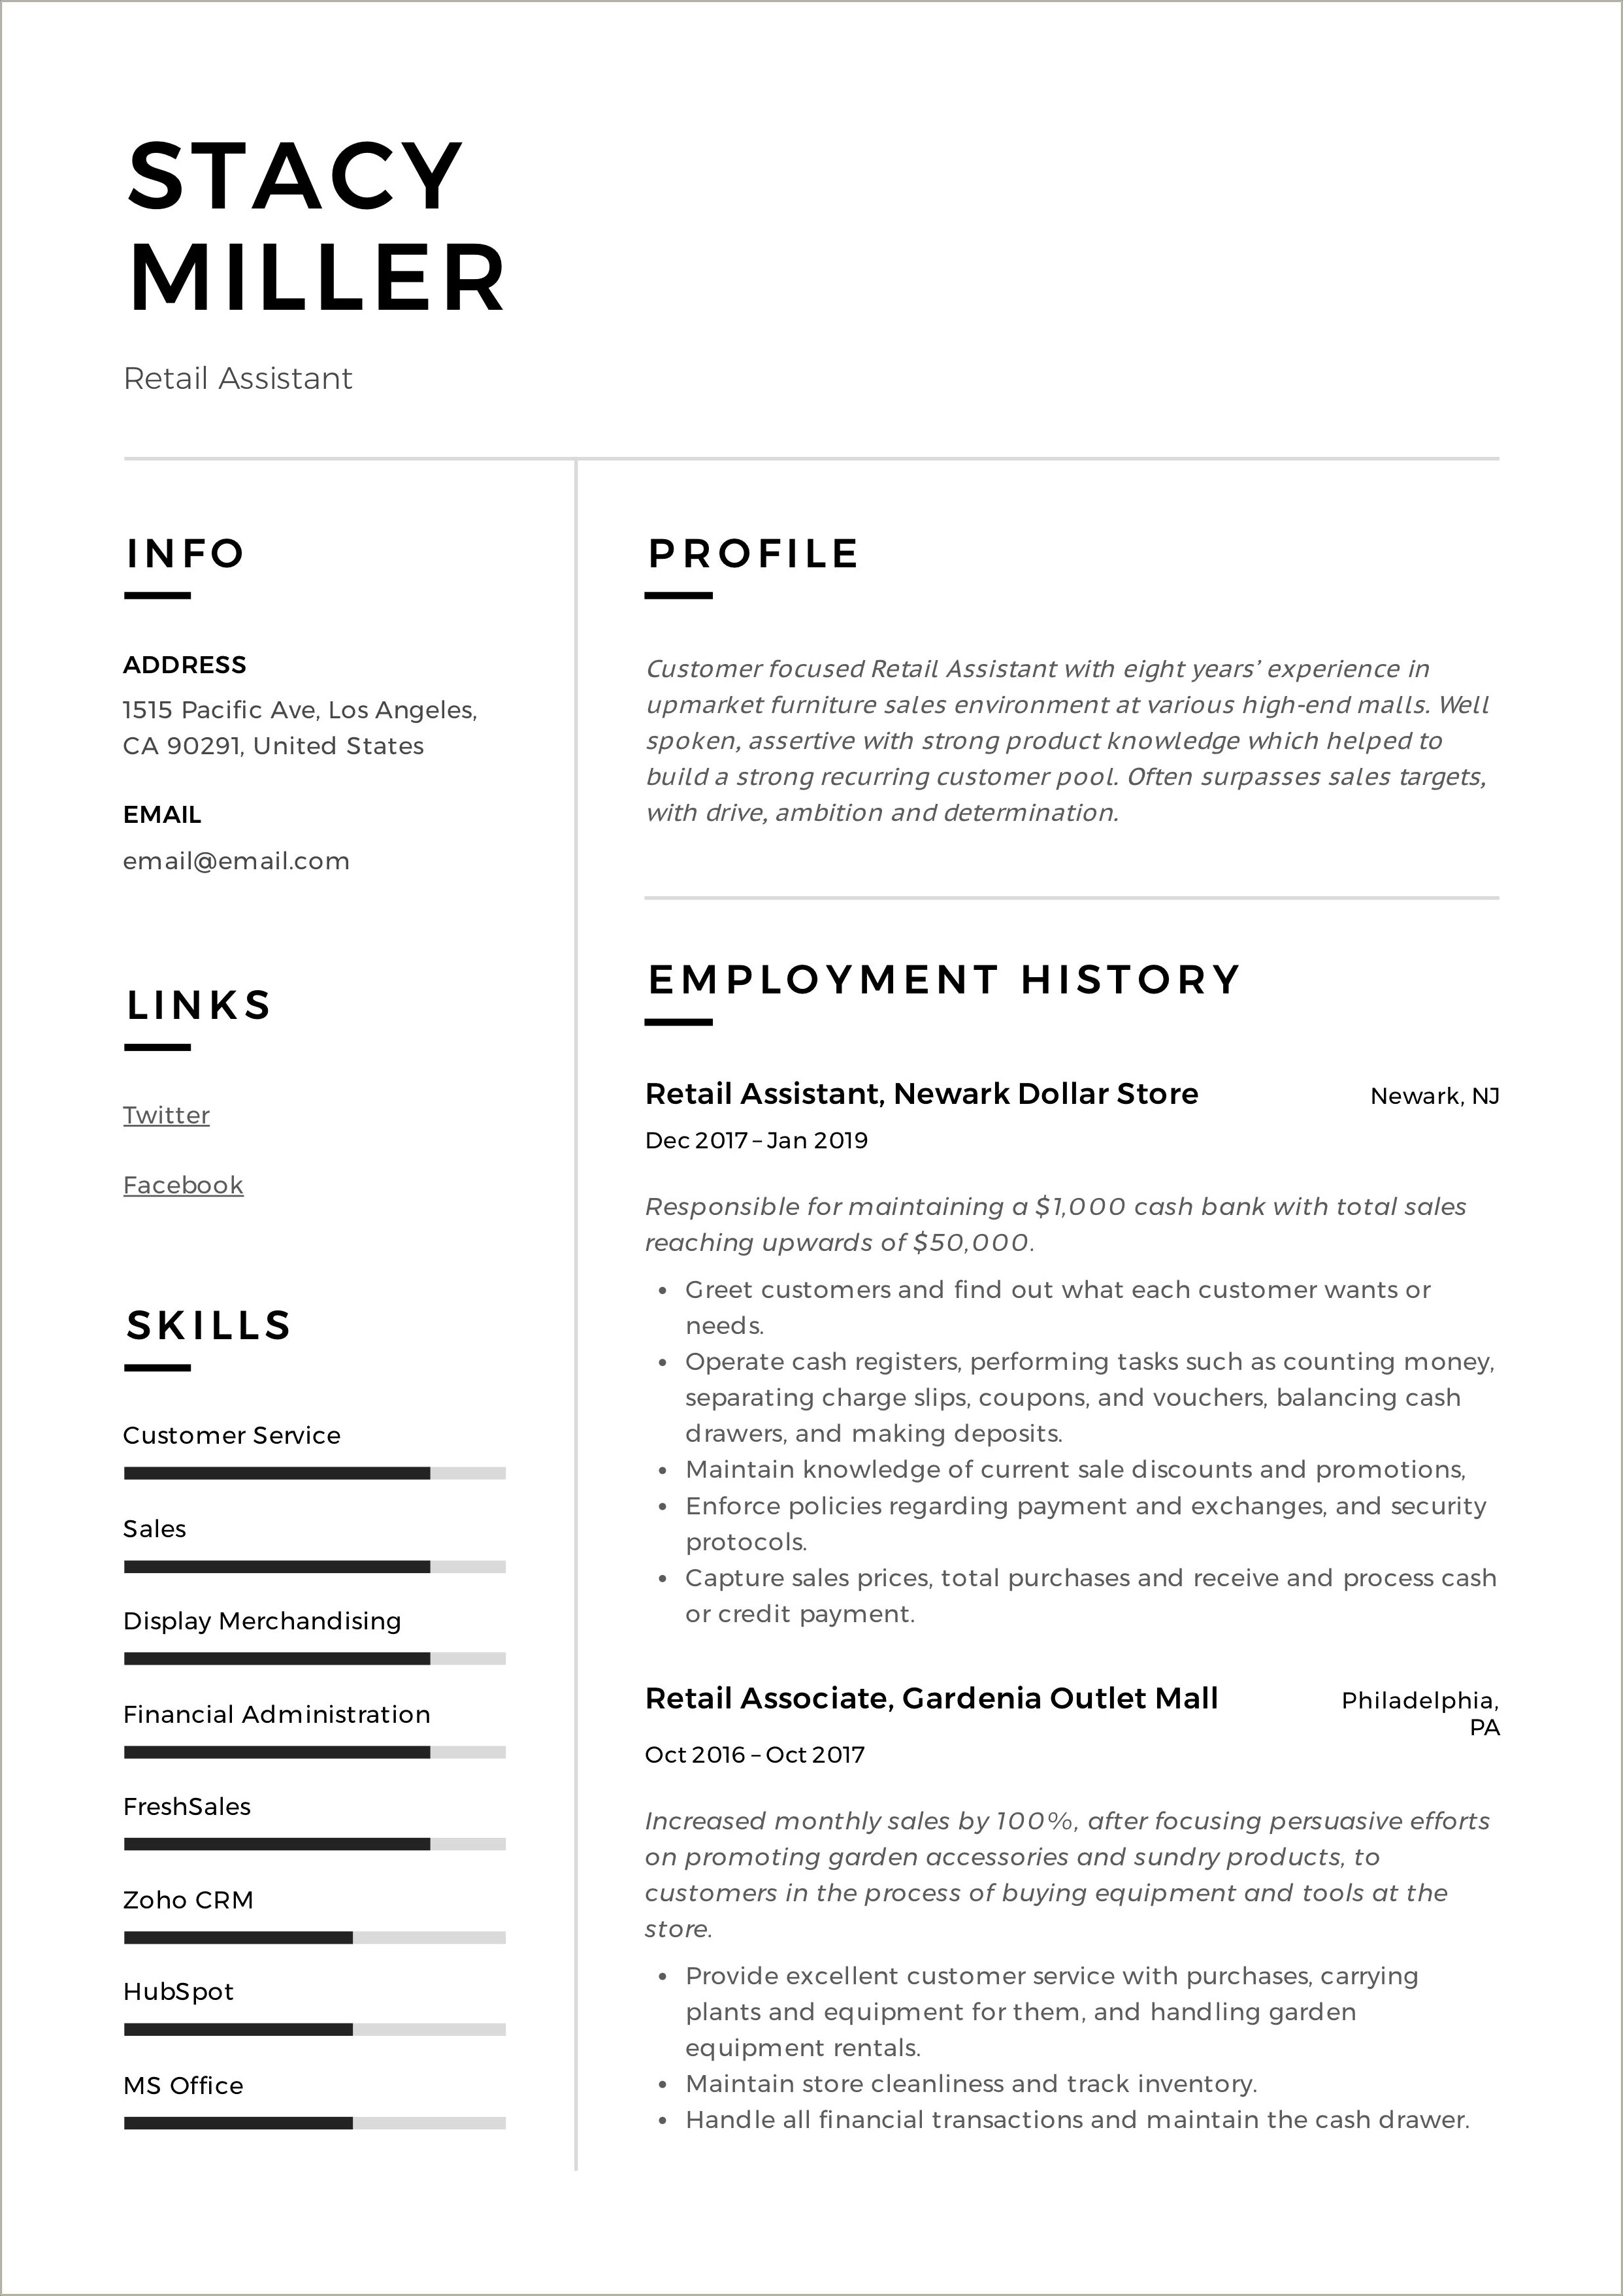 Resume Samplkes Retail To Admin Jobs